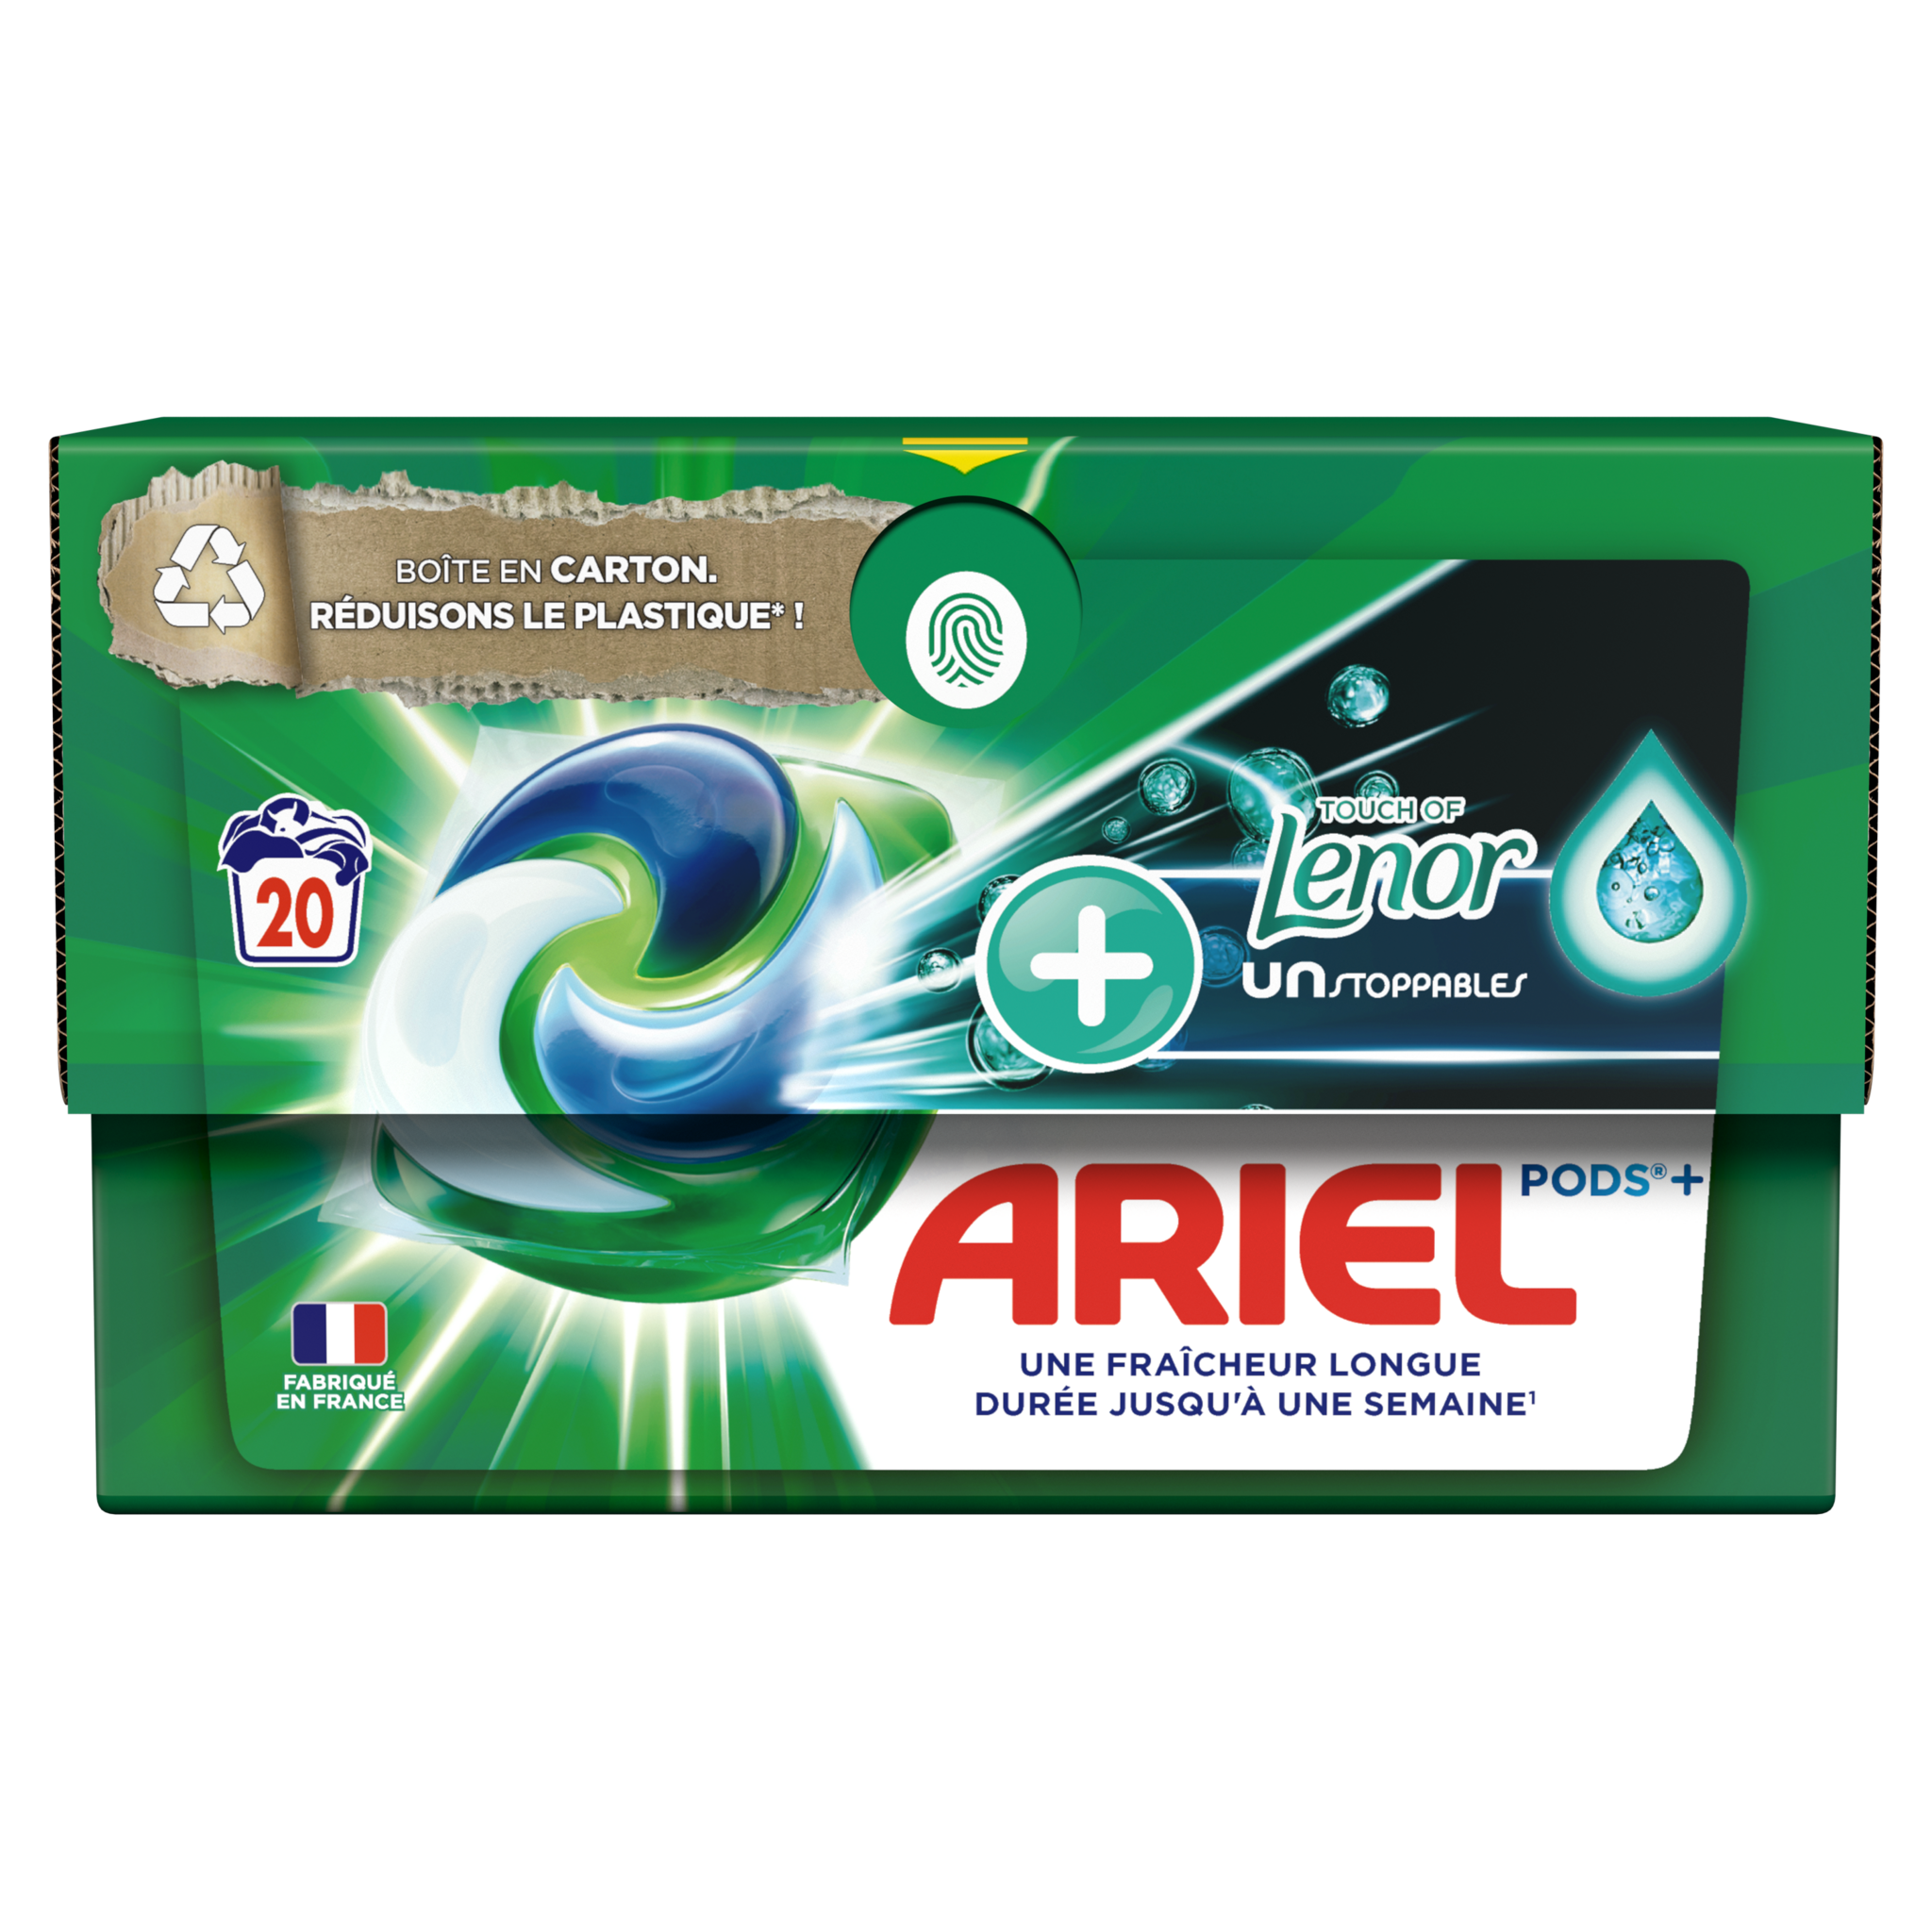 ARIEL Pods lessive capsules + touche de lenor unstoppables 20